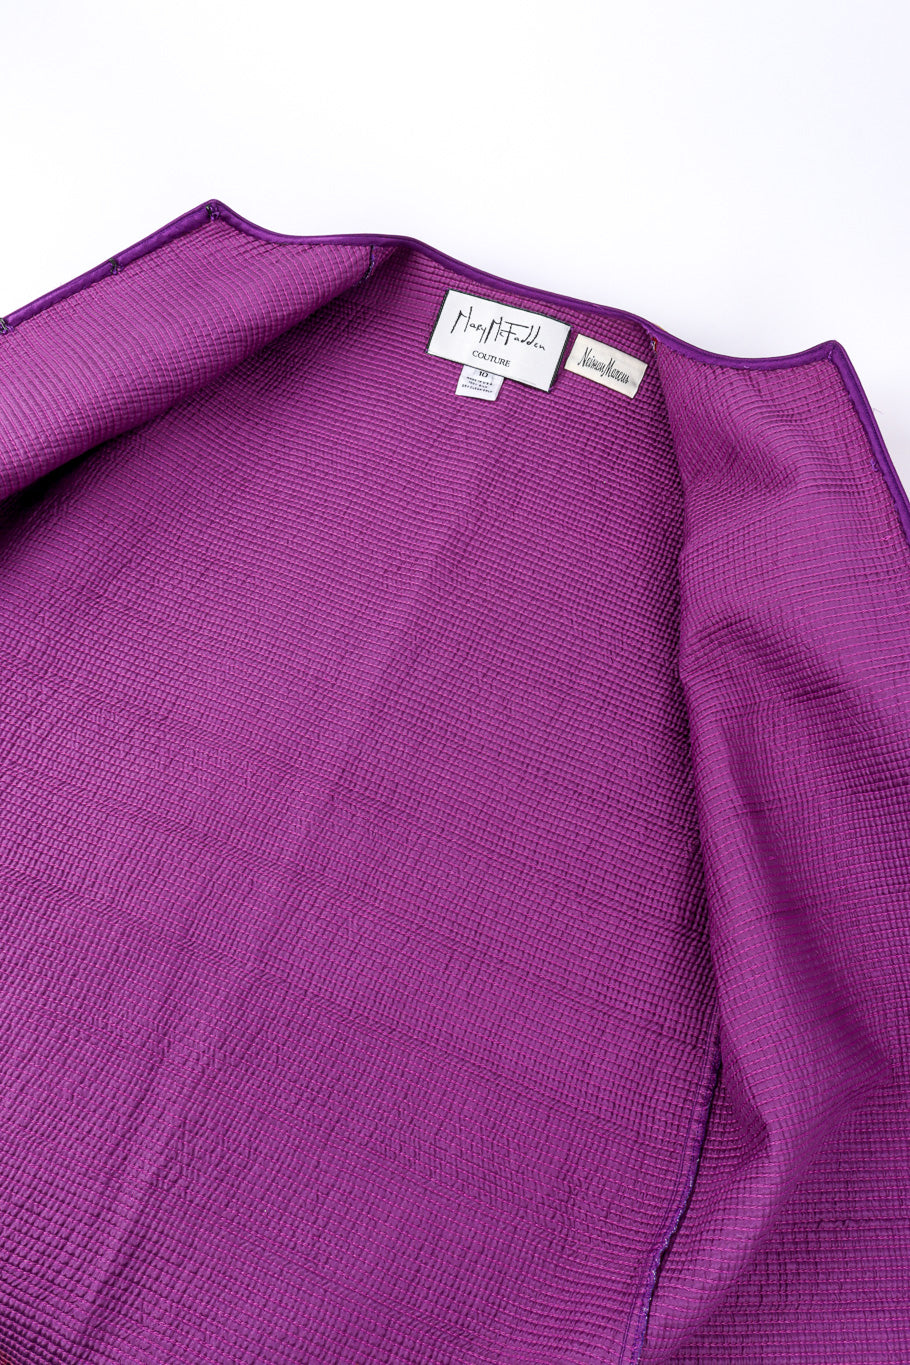 Vintage Mary McFadden Quilted Silk Splotch Jacket lining @recessla